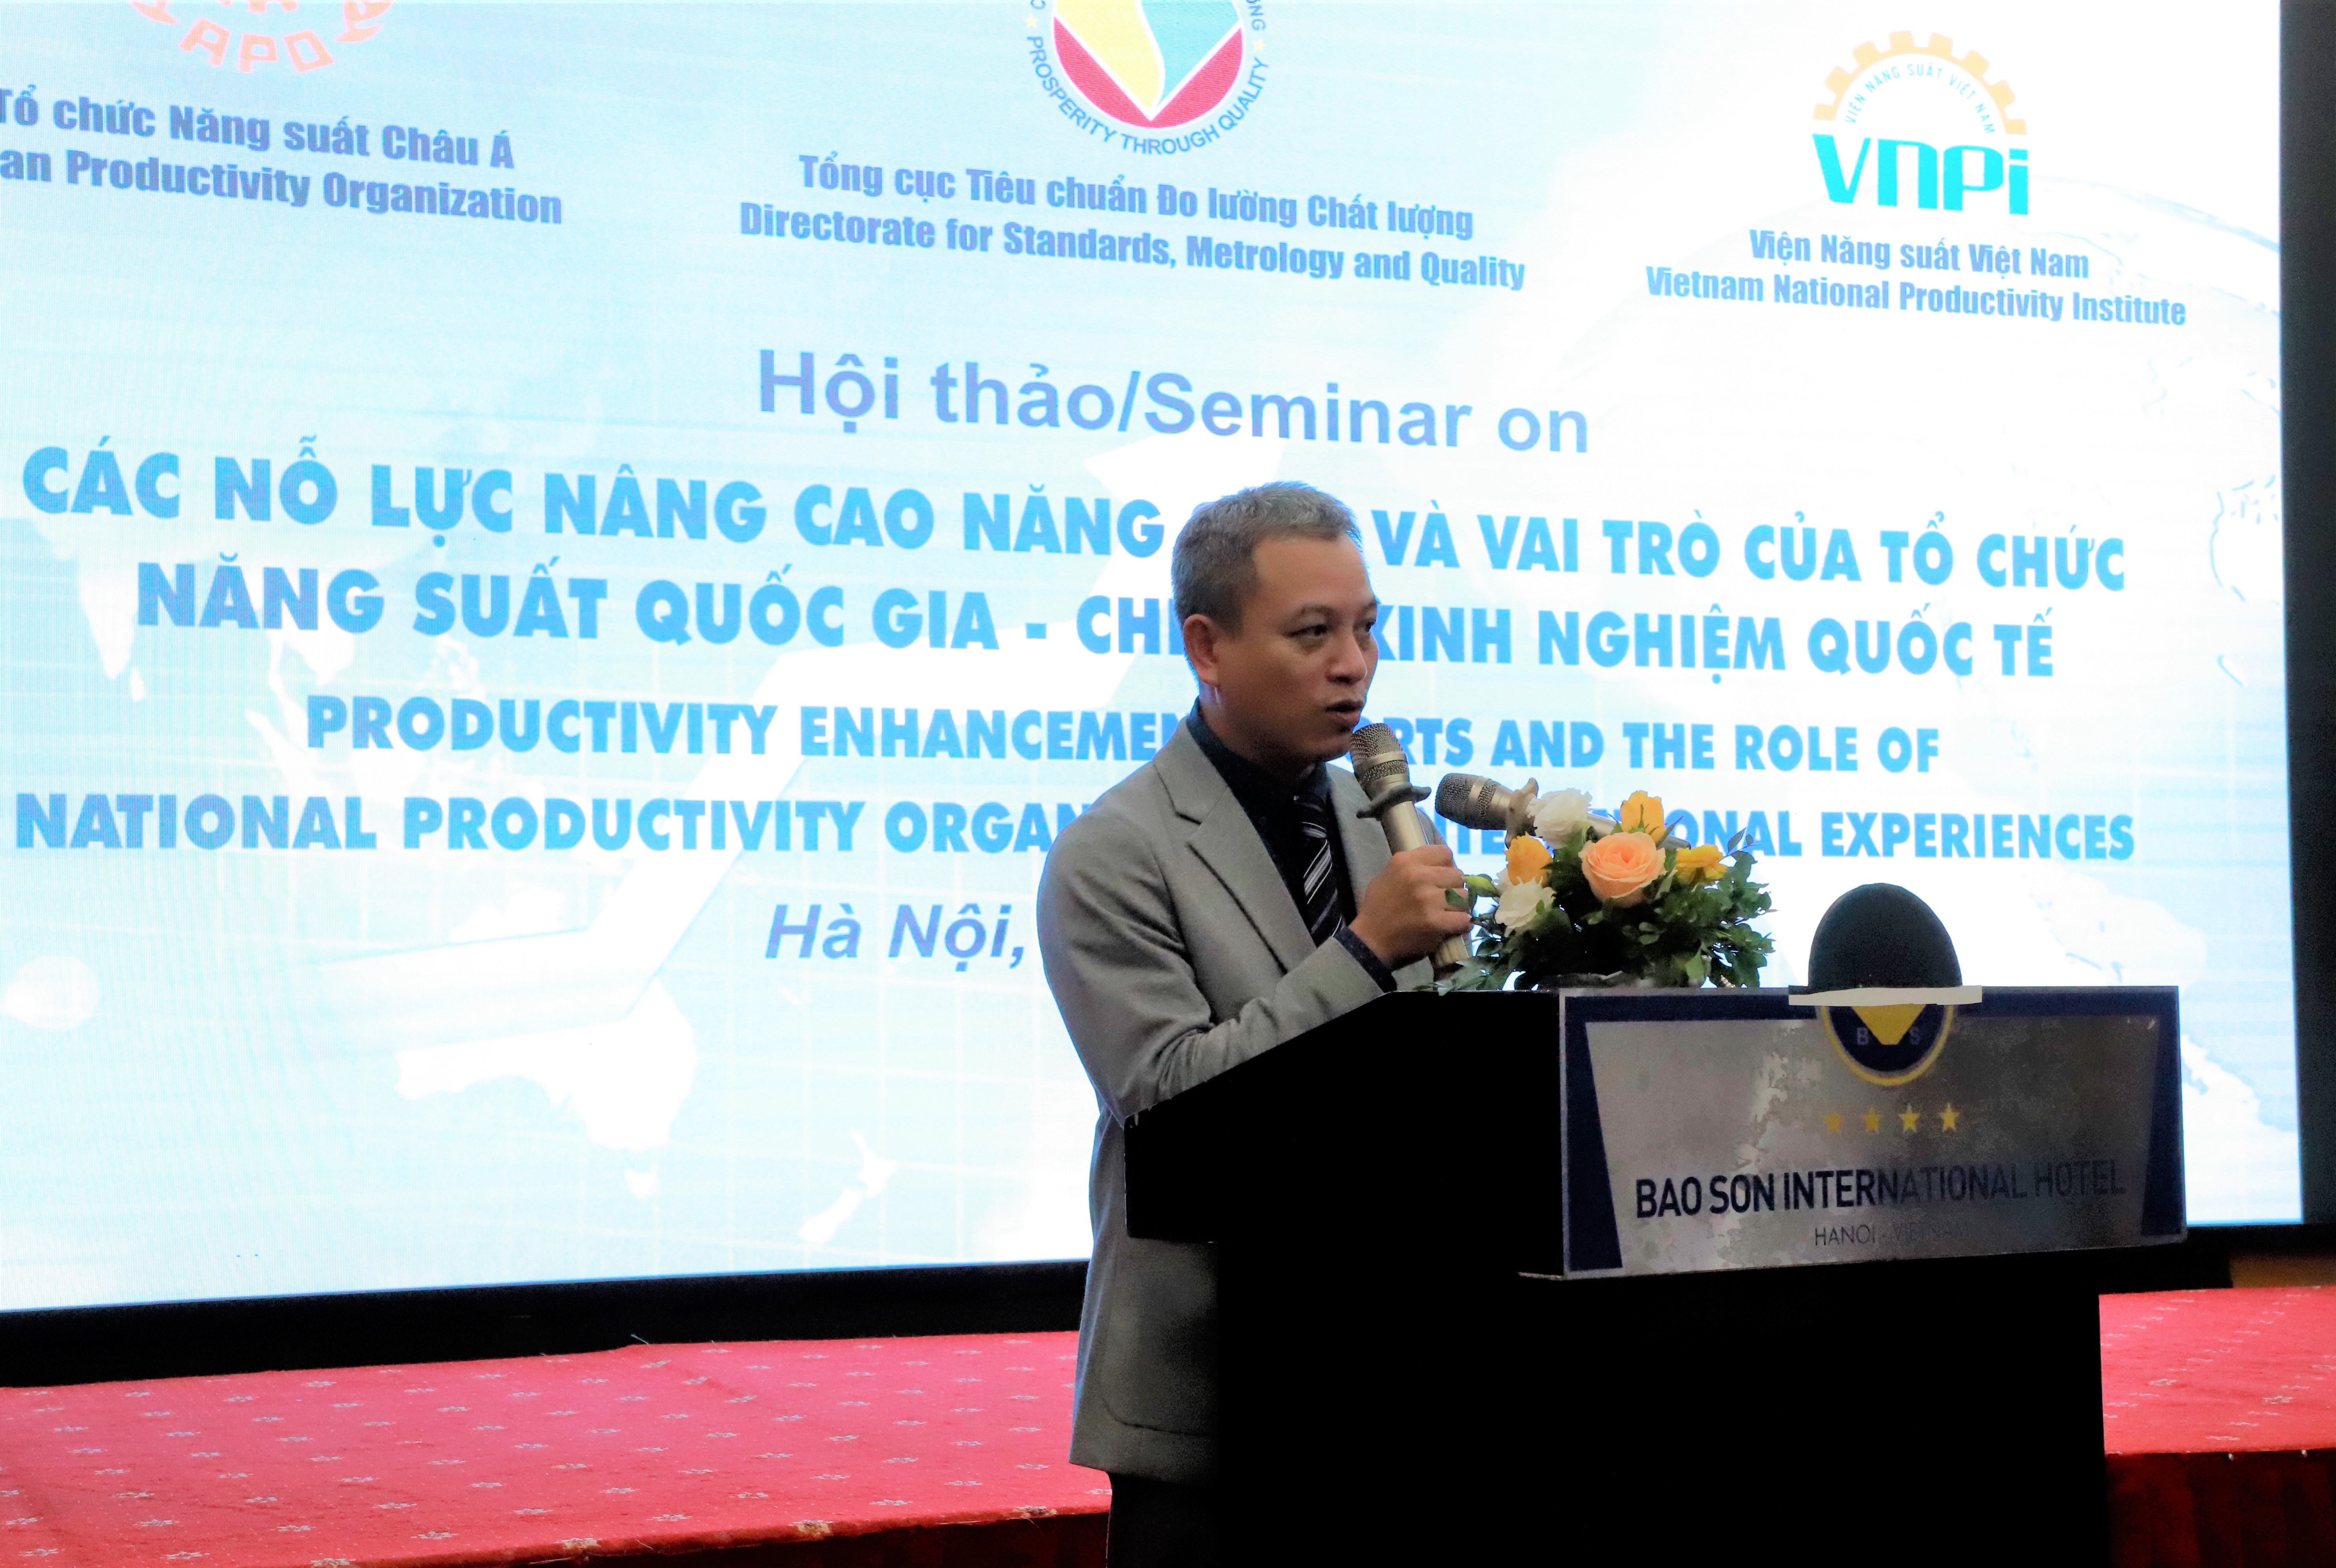 Viện năng suất với công tác thúc đẩy phong trào năng suất ở Việt Nam